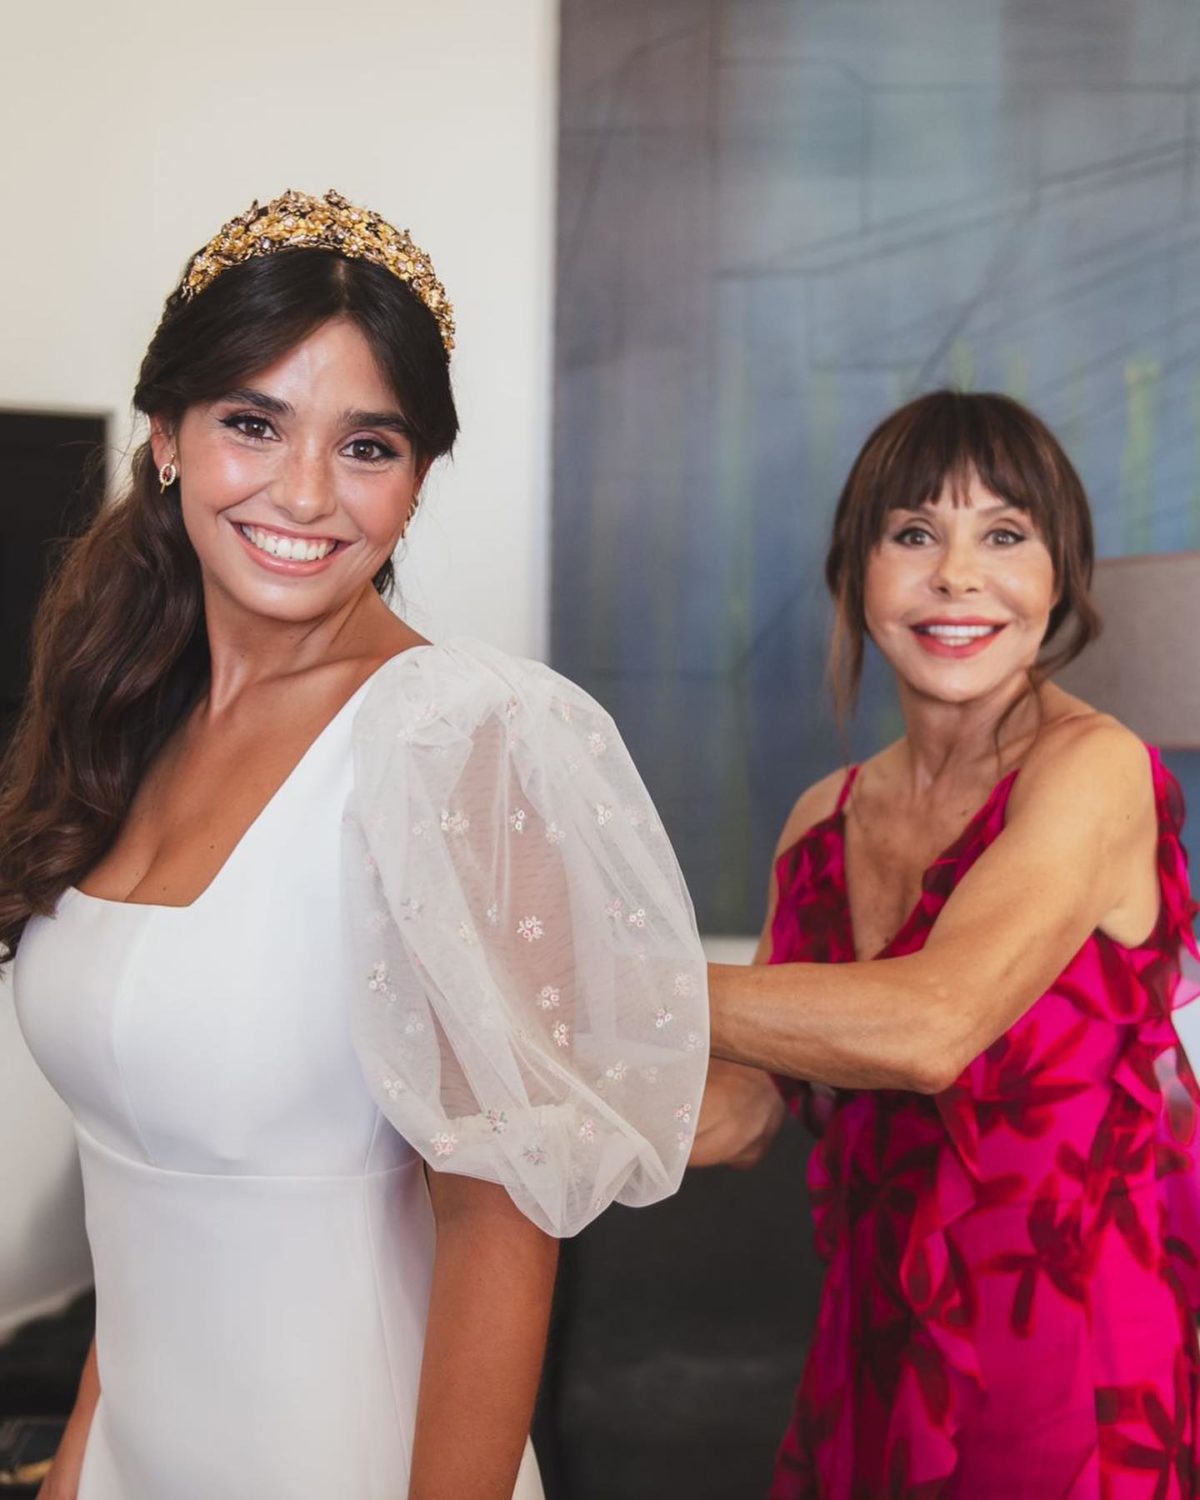 Nova foto revela o look de Manuela Moura Guedes para o casamento da filha